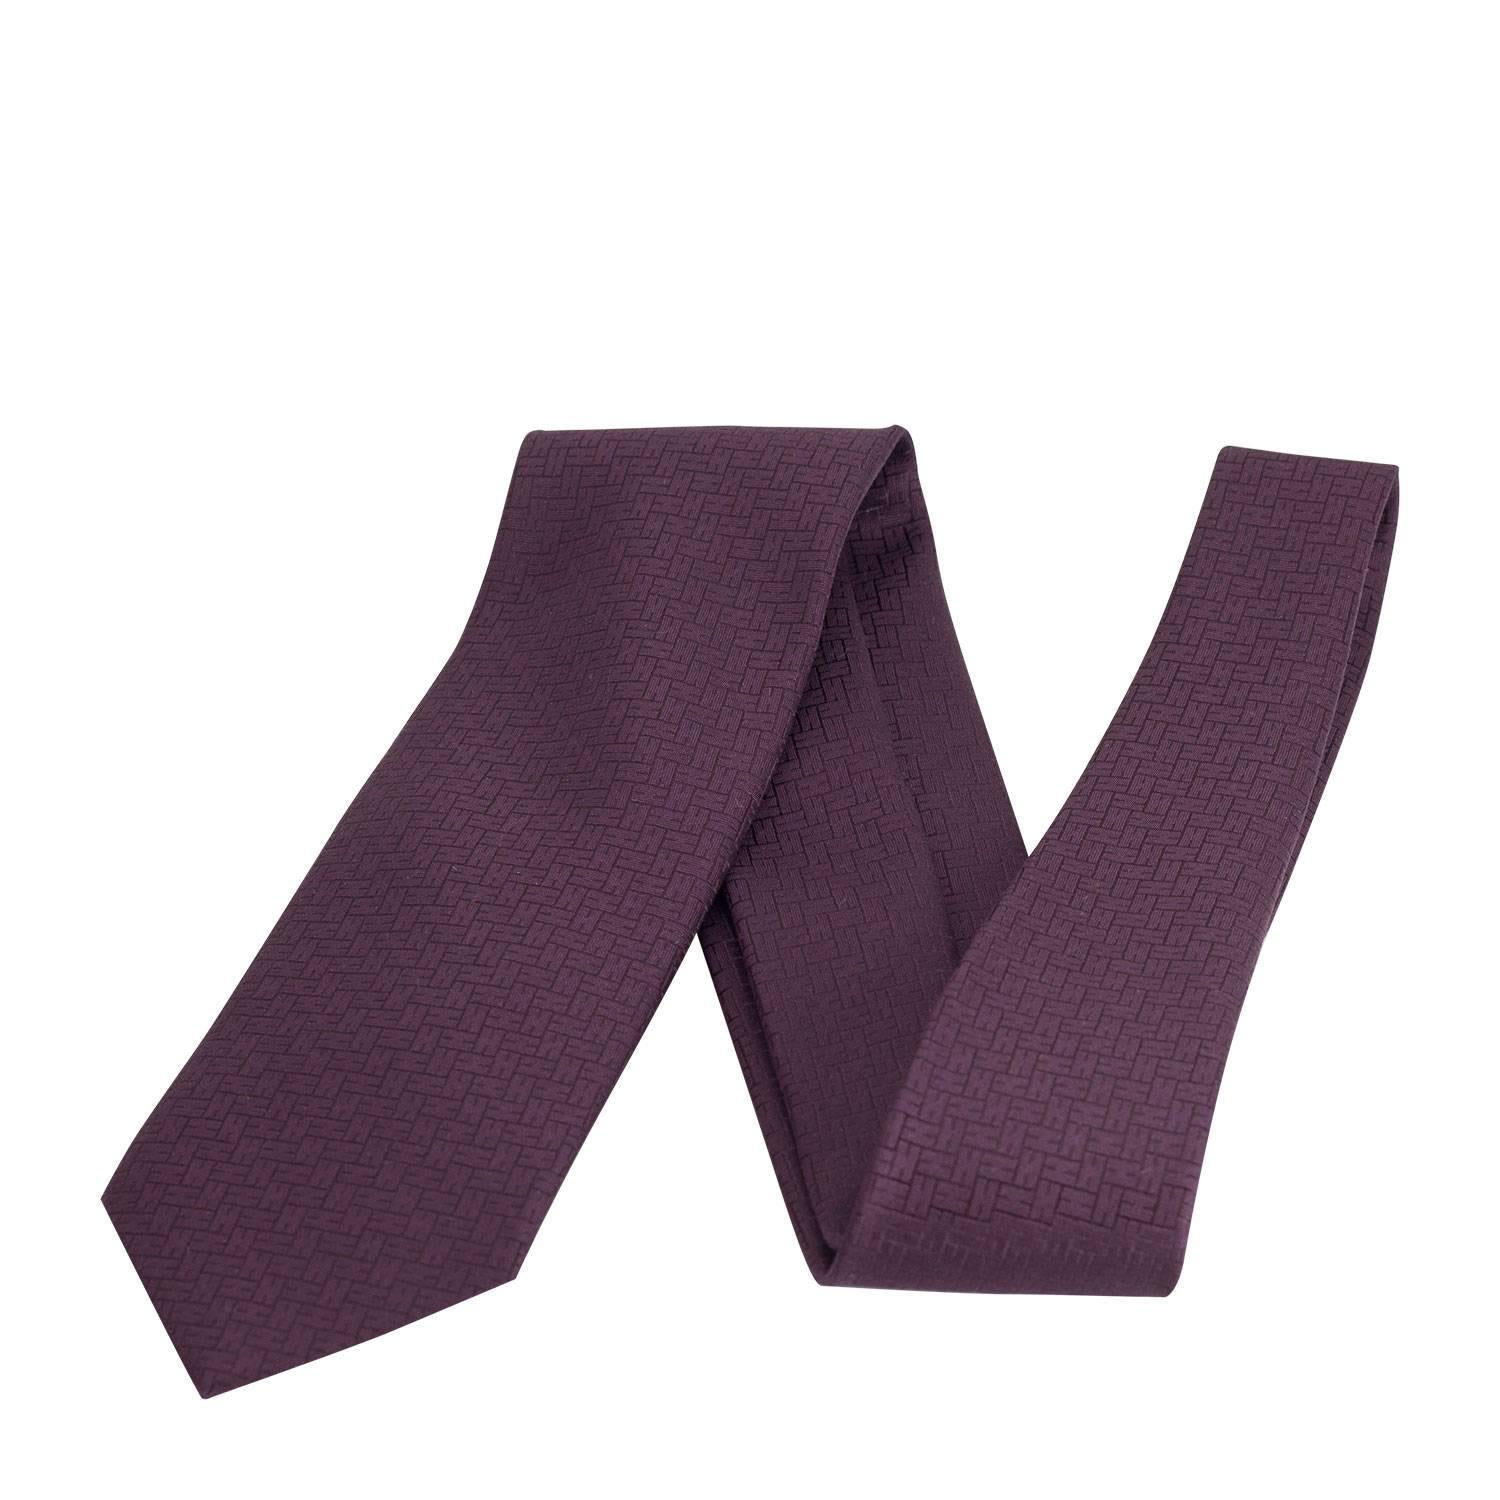 Hermes silk tie "Façonnée H 24" hand-folded, 3.15'' wide 100% silk Violet 2016